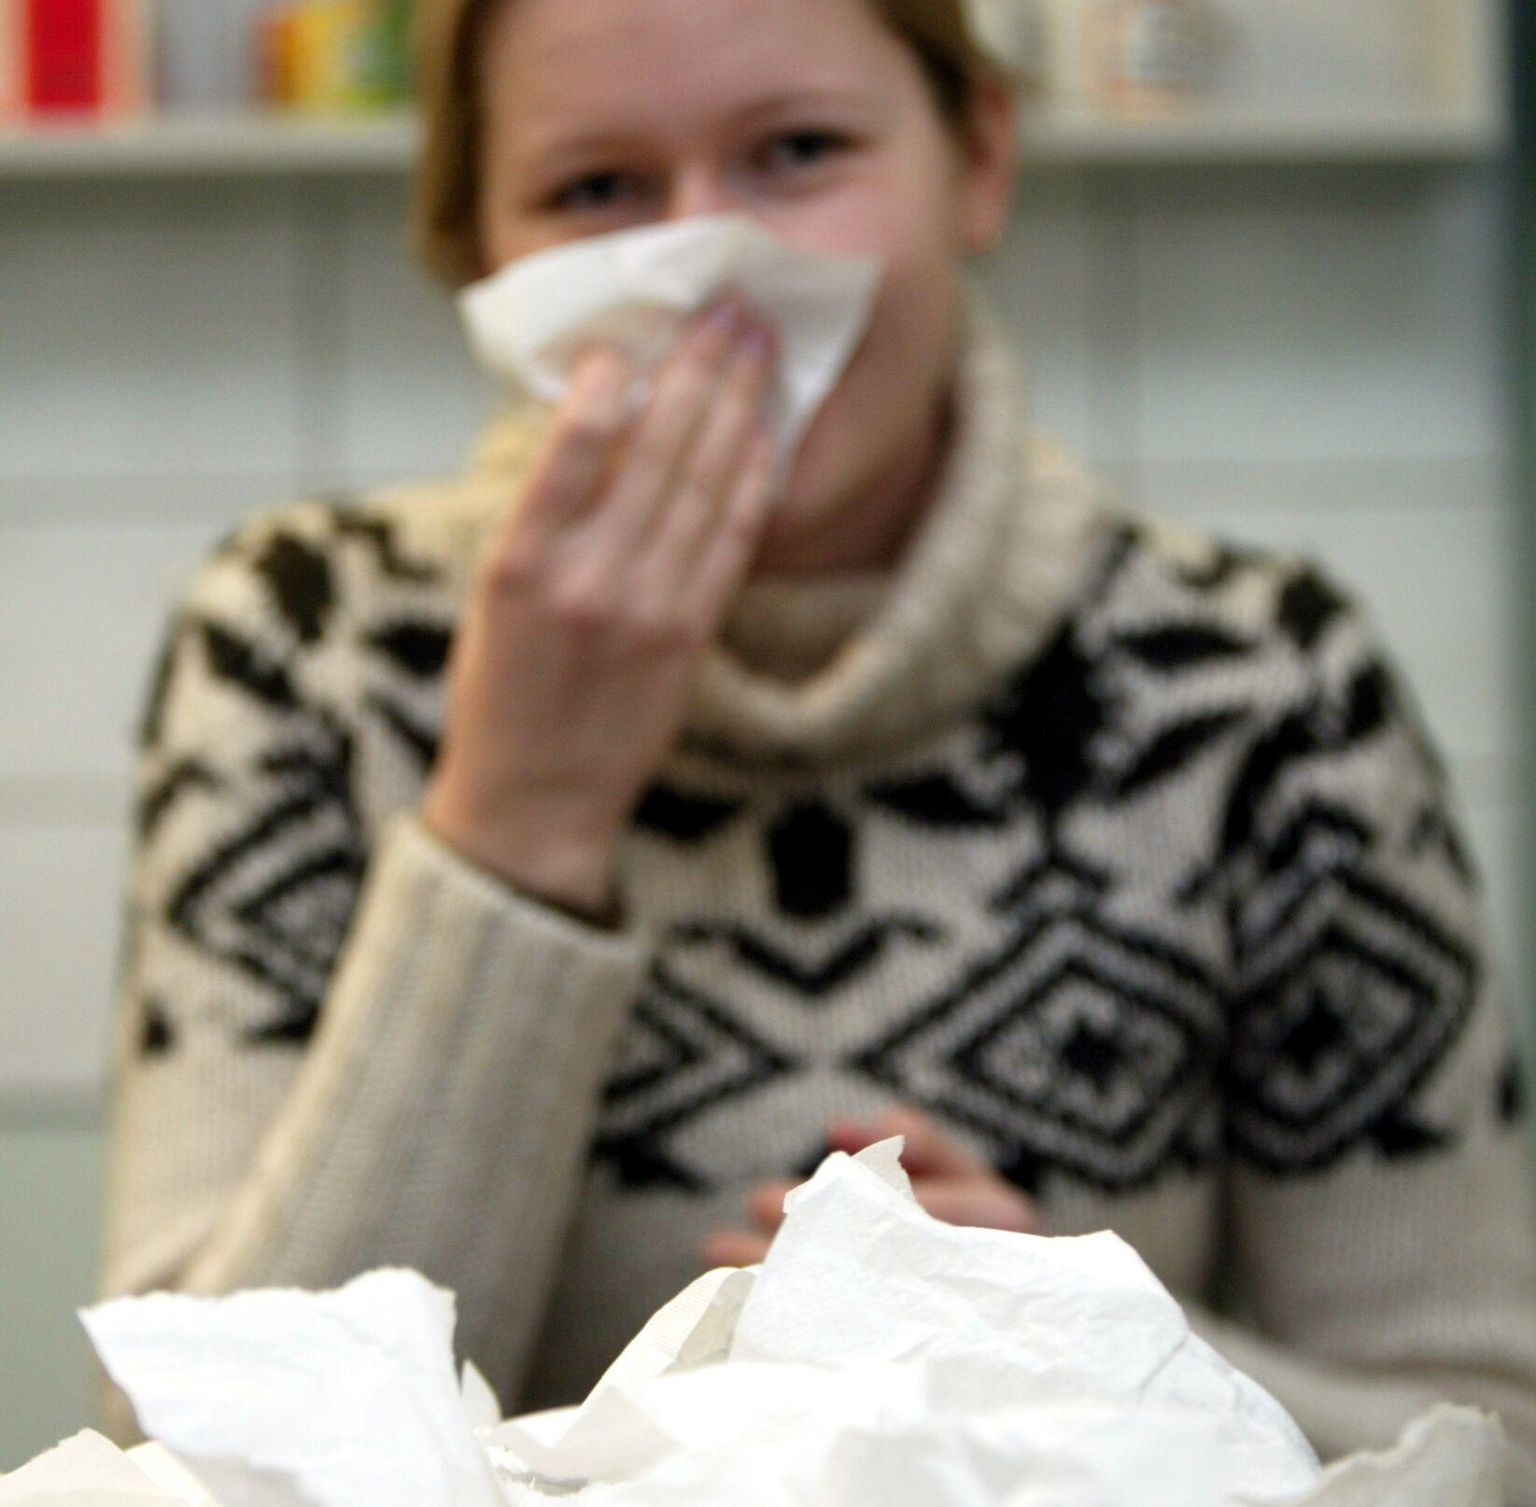 Gripi üheks sümptomiks võib olla tugev nohu. Pilt on illustreeriv.